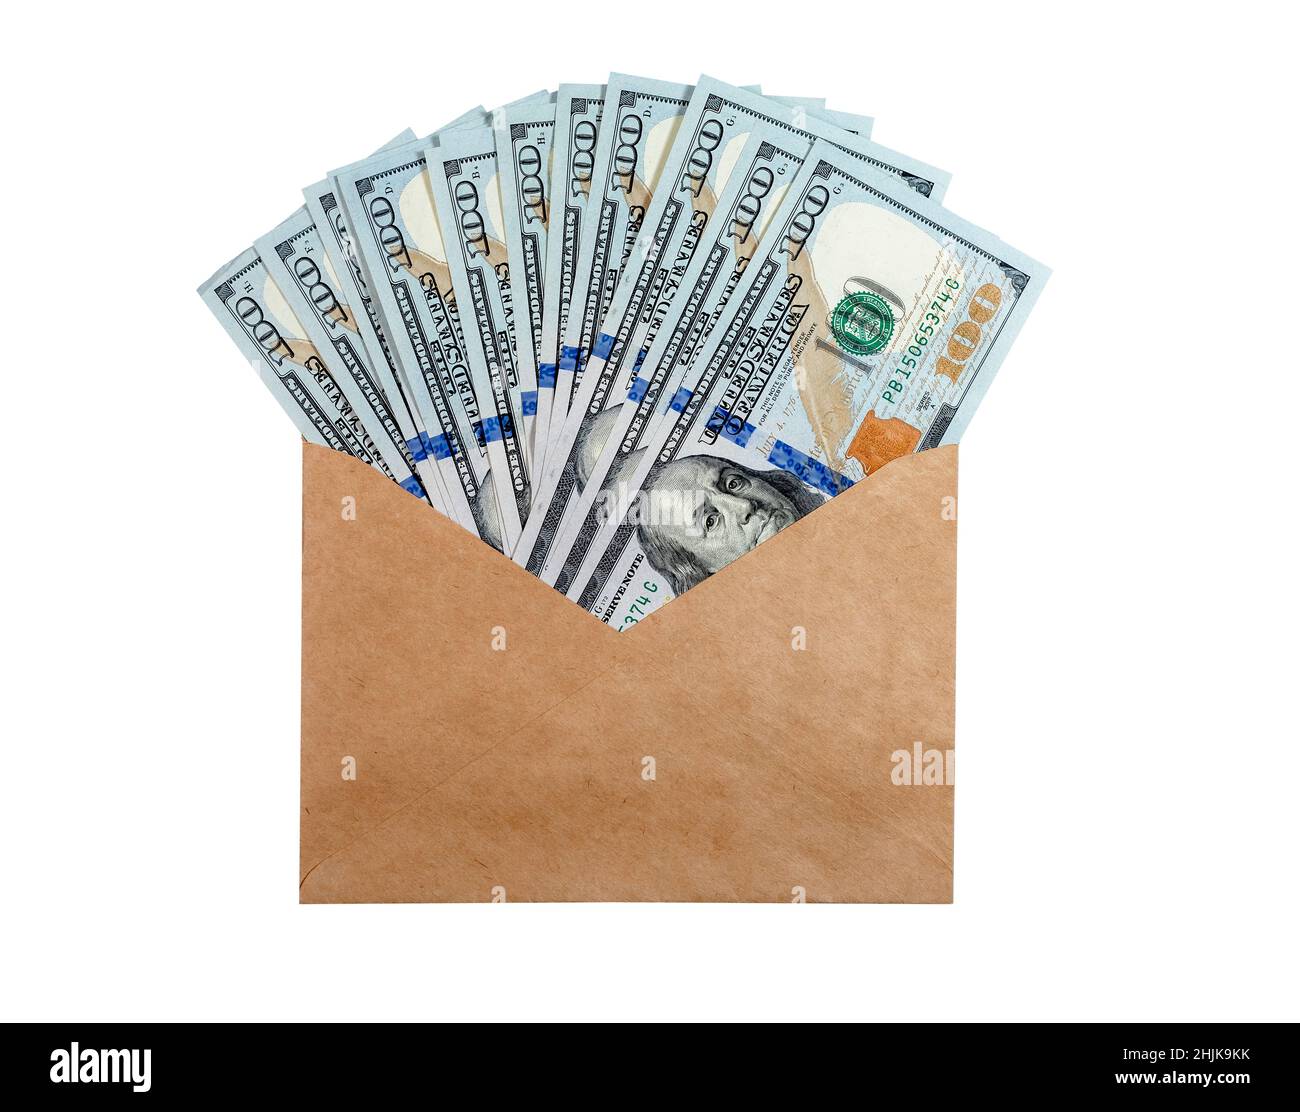 US cento dollari fatture in busta di carta artigianale isolato su sfondo bianco. Soldi americani. Foto di alta qualità Foto Stock